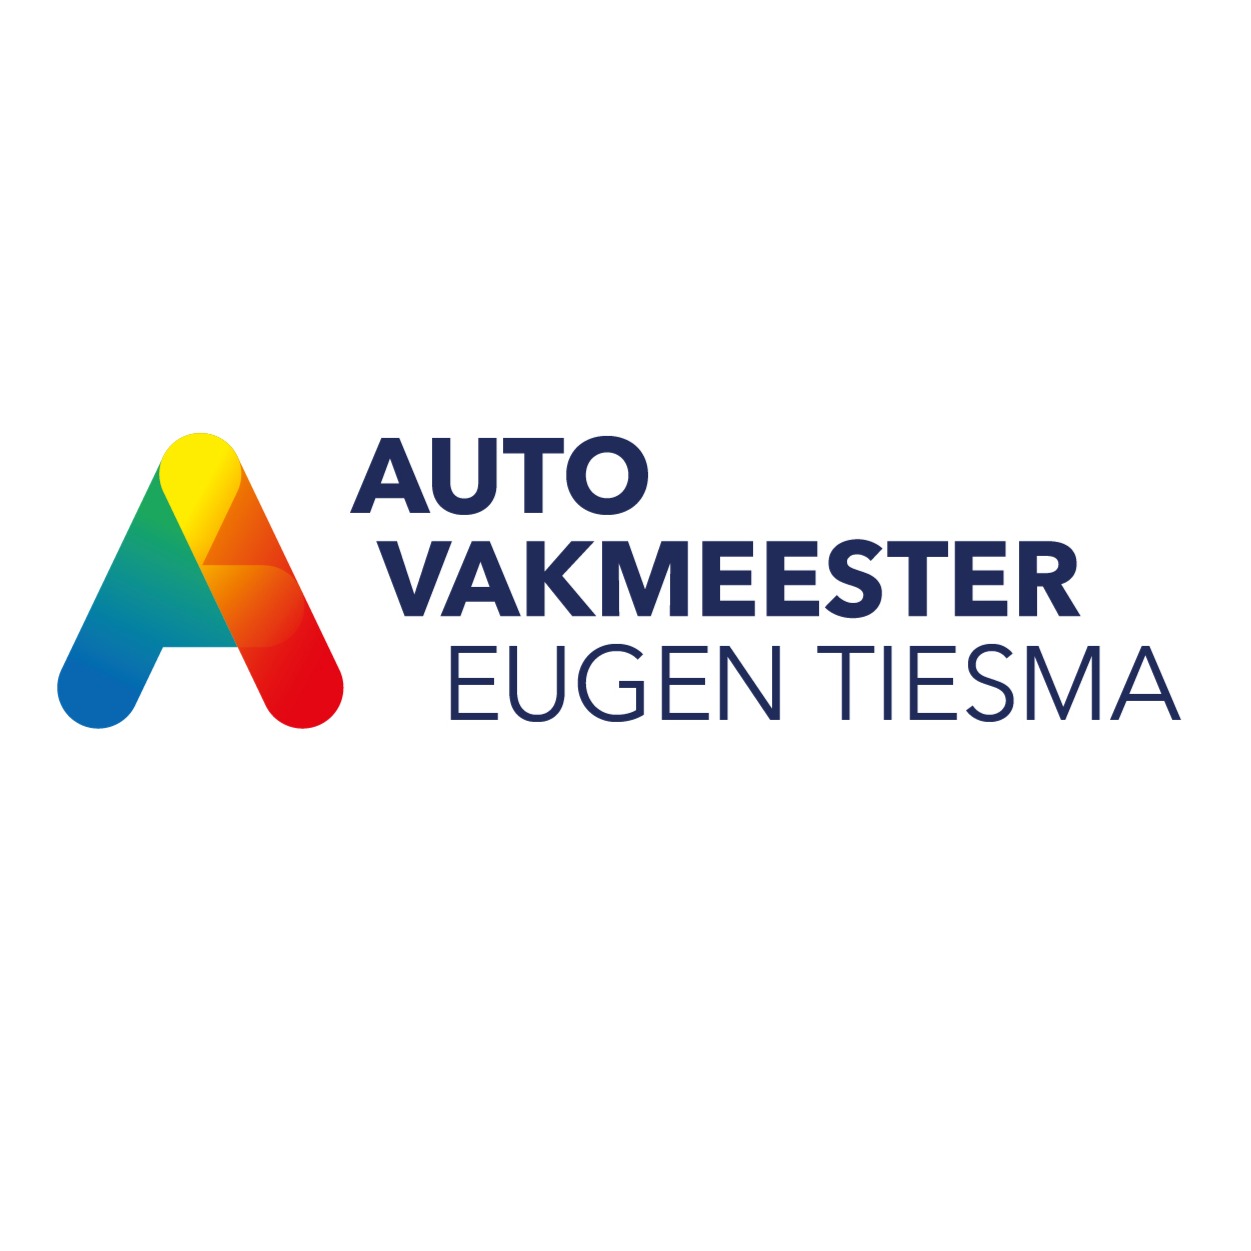 Autobedrijf Eugen Tiesma | Autovakmeester Logo